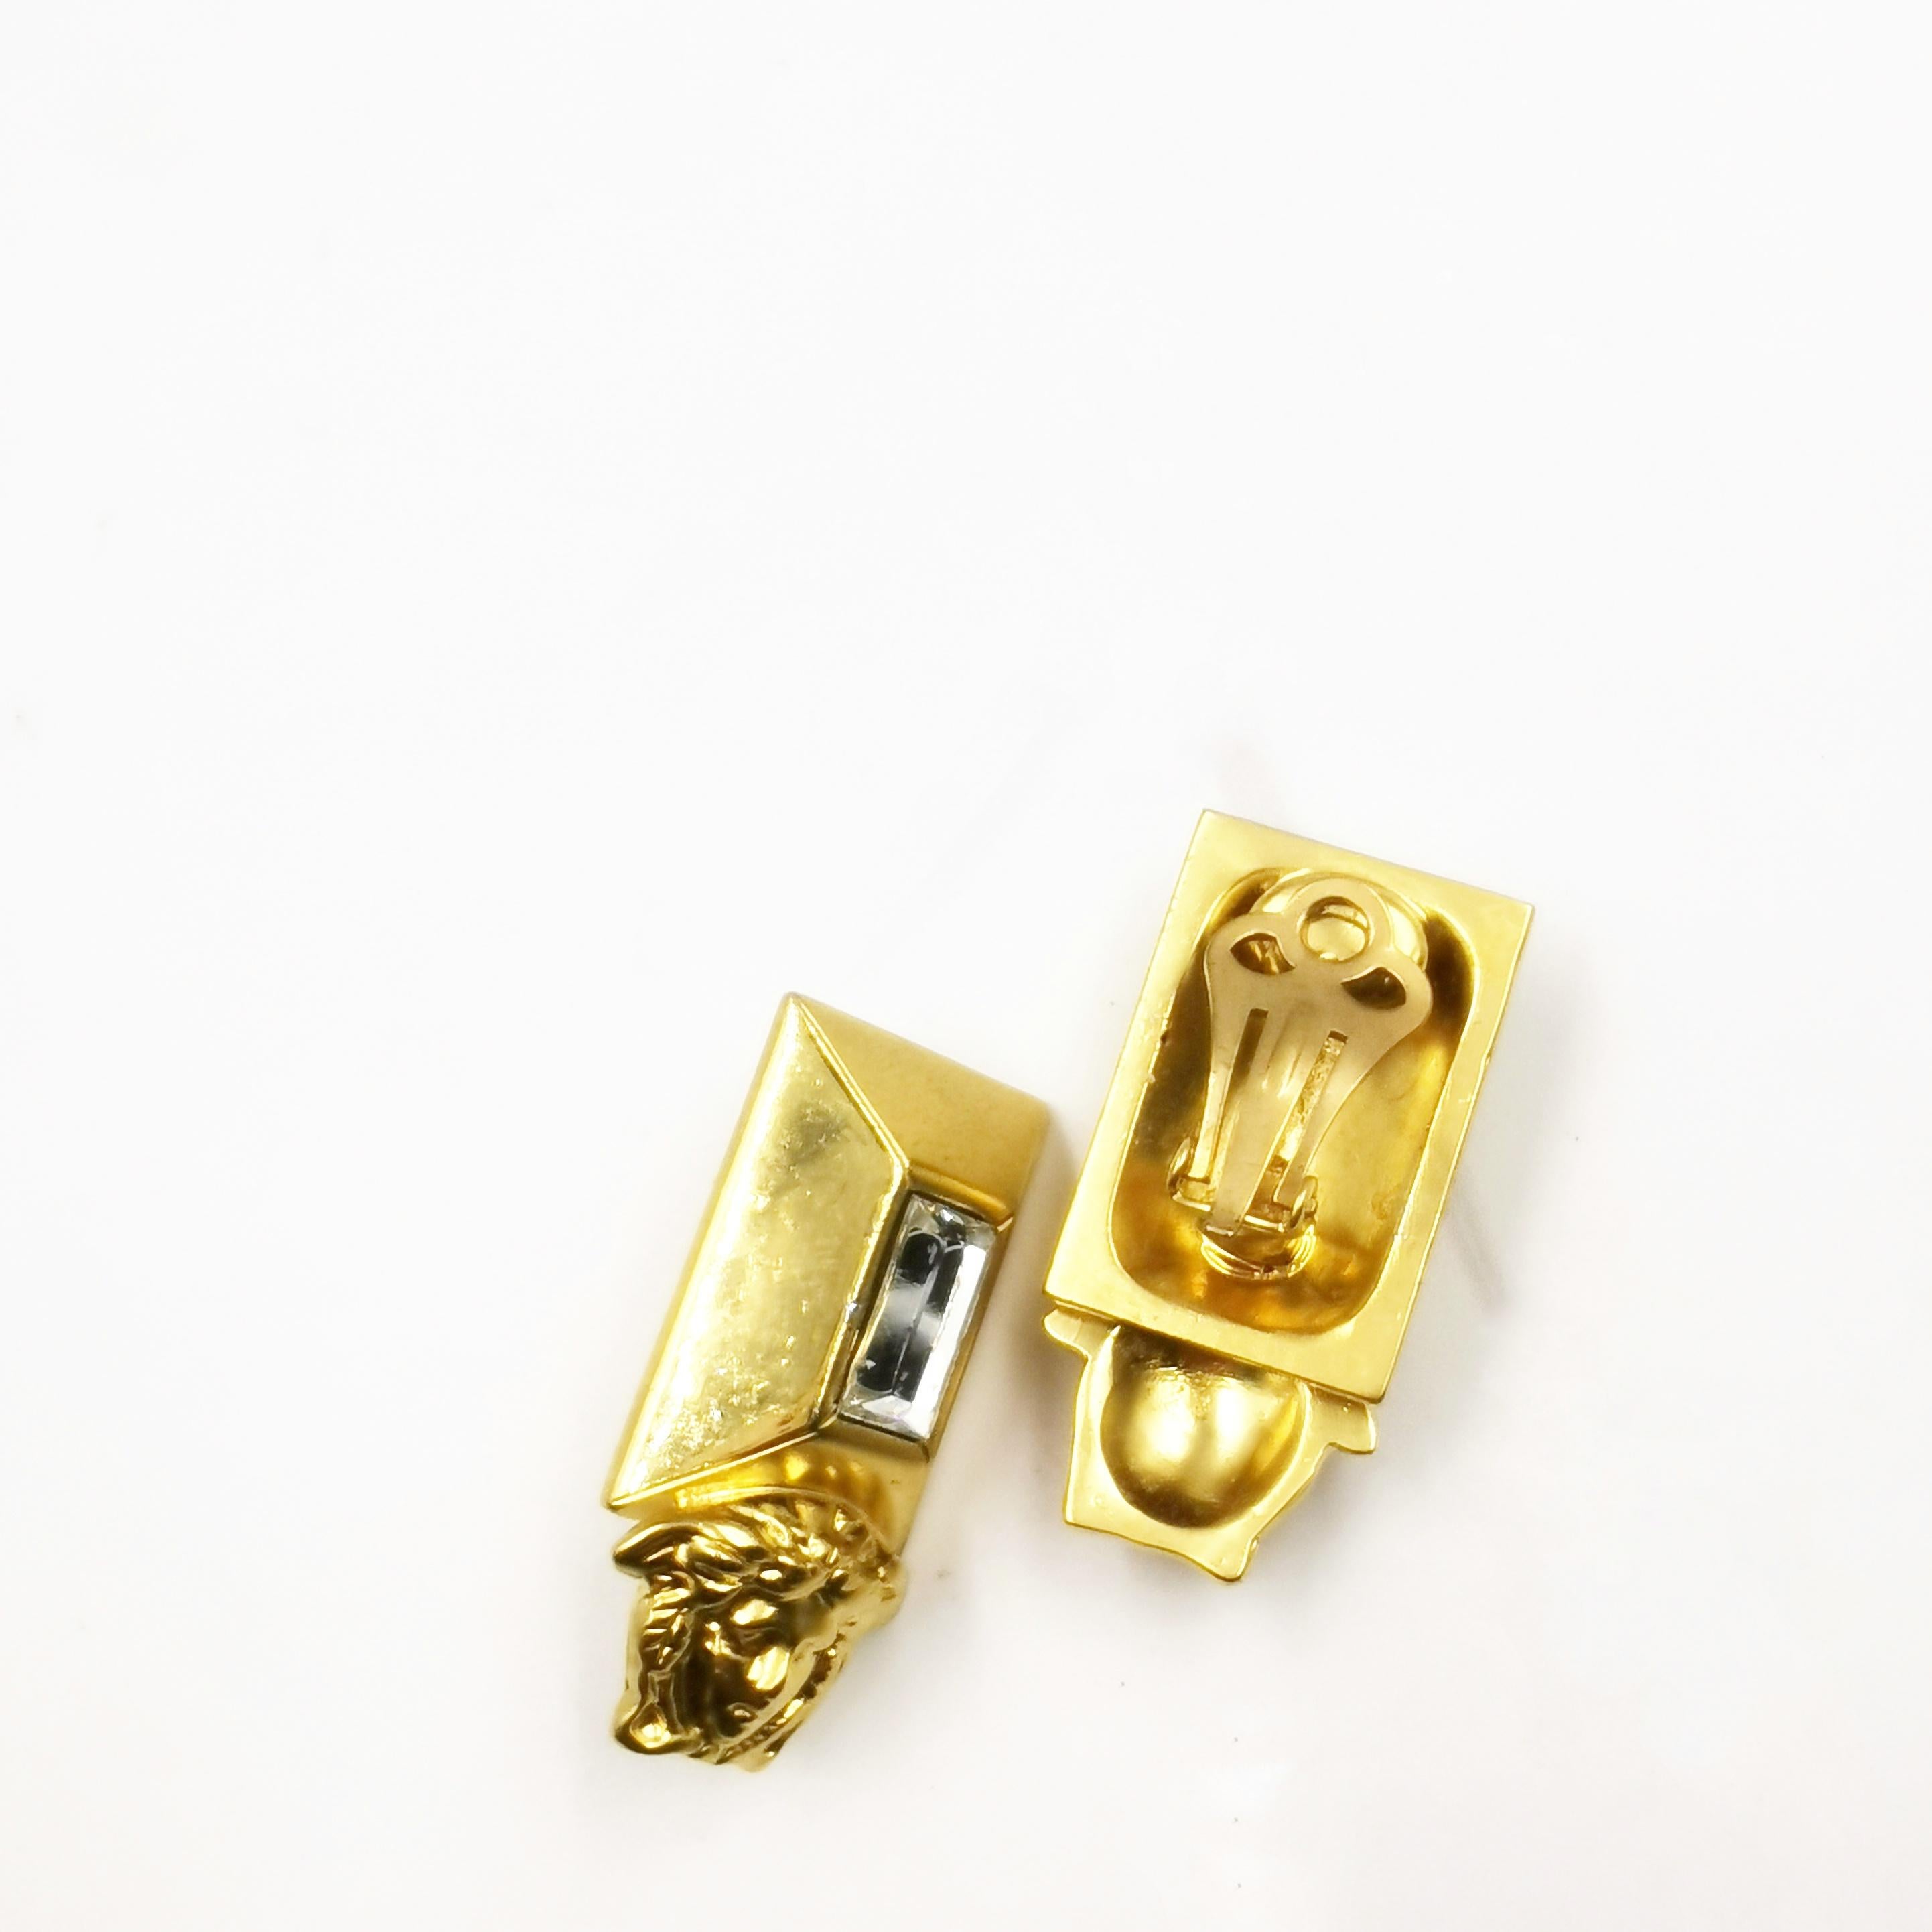 Tauchen Sie ein in die glamouröse Welt der 1990er Jahre mit den atemberaubenden Gianni Versace Vintage Gold Medusa Emerald Cut Crystal Clip On Earrings. Diese atemberaubenden Ohrringe fangen die Essenz der ikonischen Ästhetik von Versace ein und